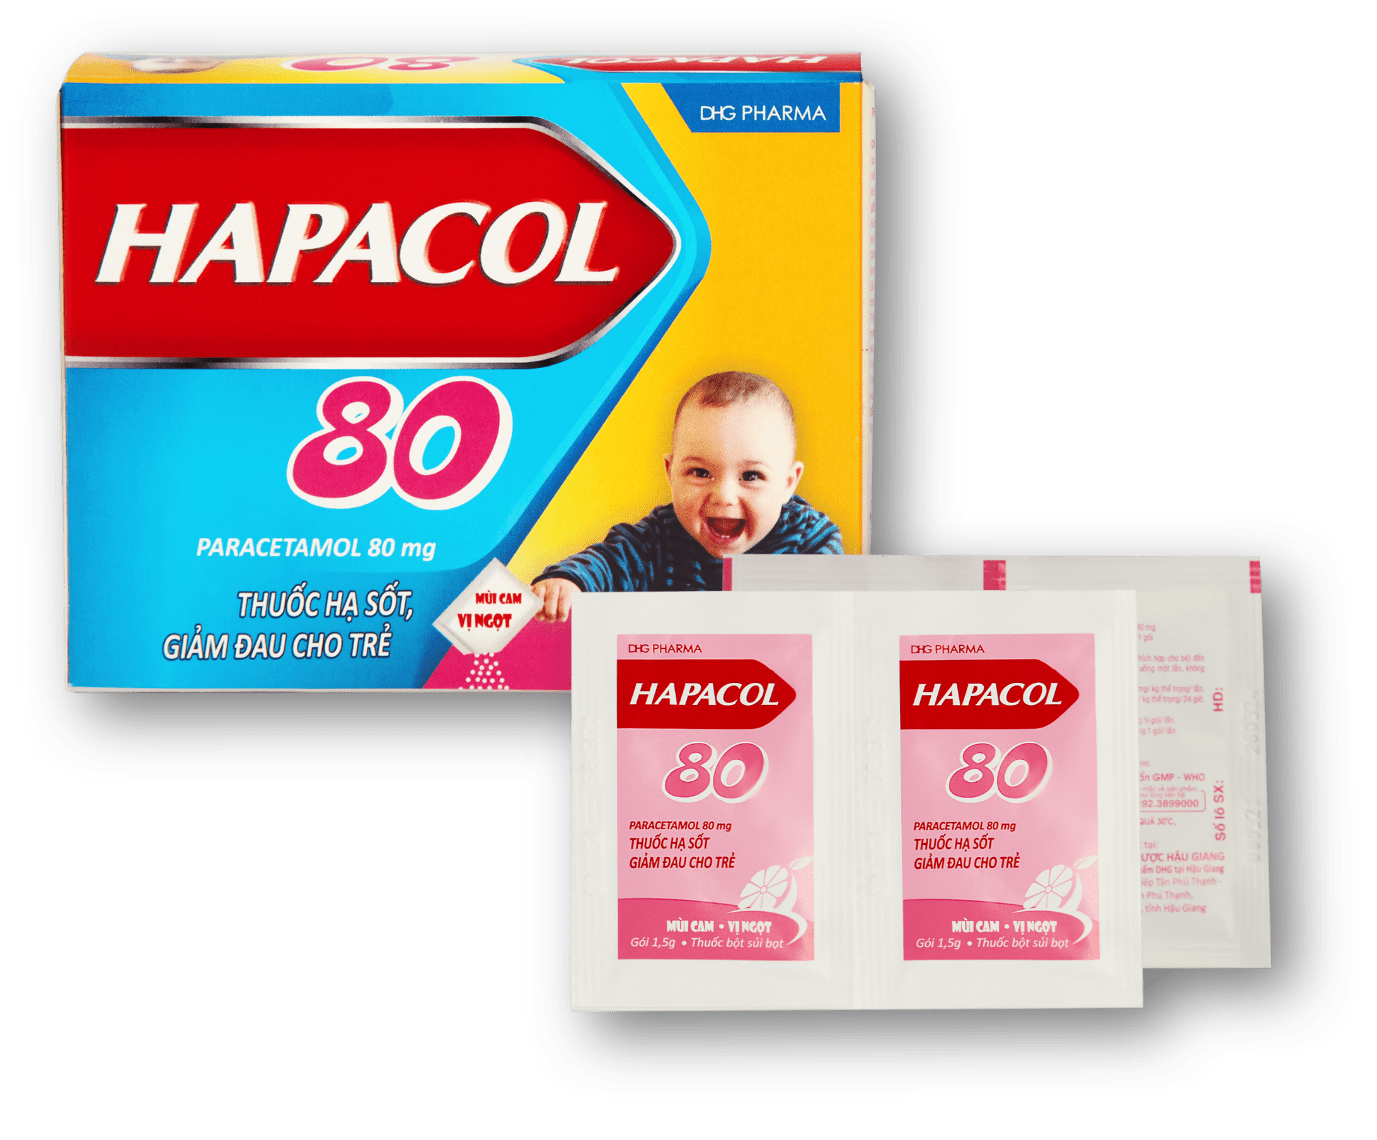 Ảnh của Hapacol 80
